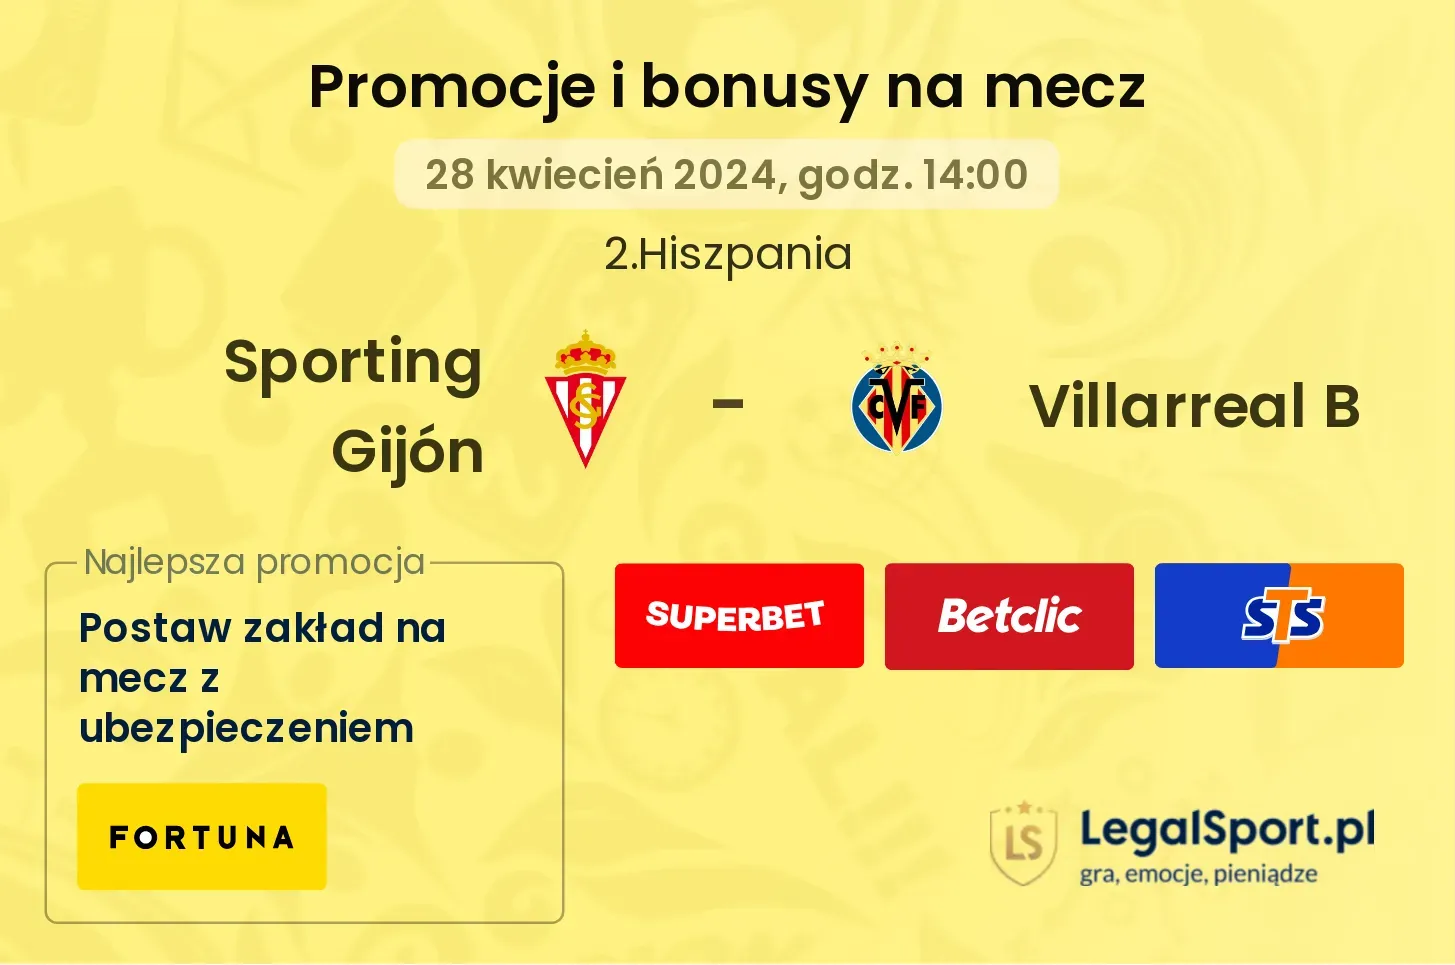 Sporting Gijón - Villarreal B promocje bonusy na mecz